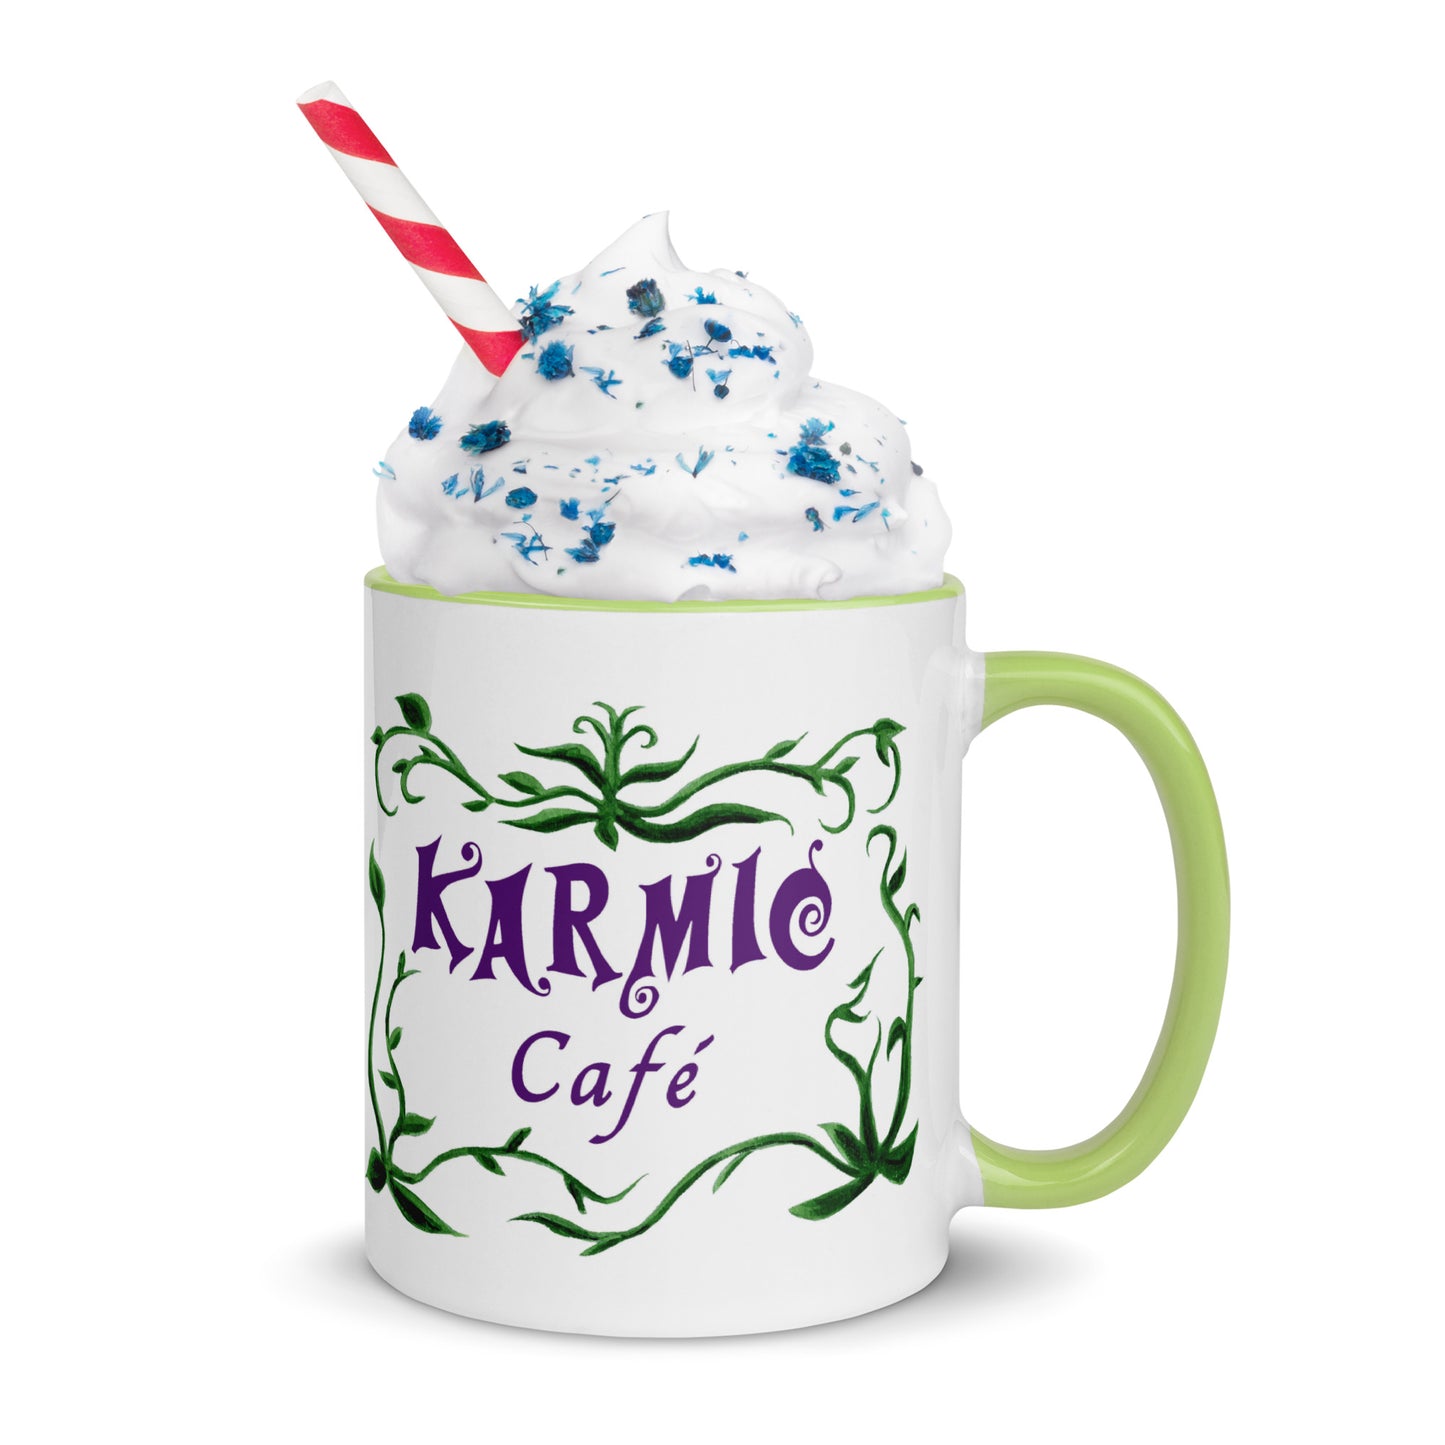 Fat Cat - Karmic Cafe Mug - color inside